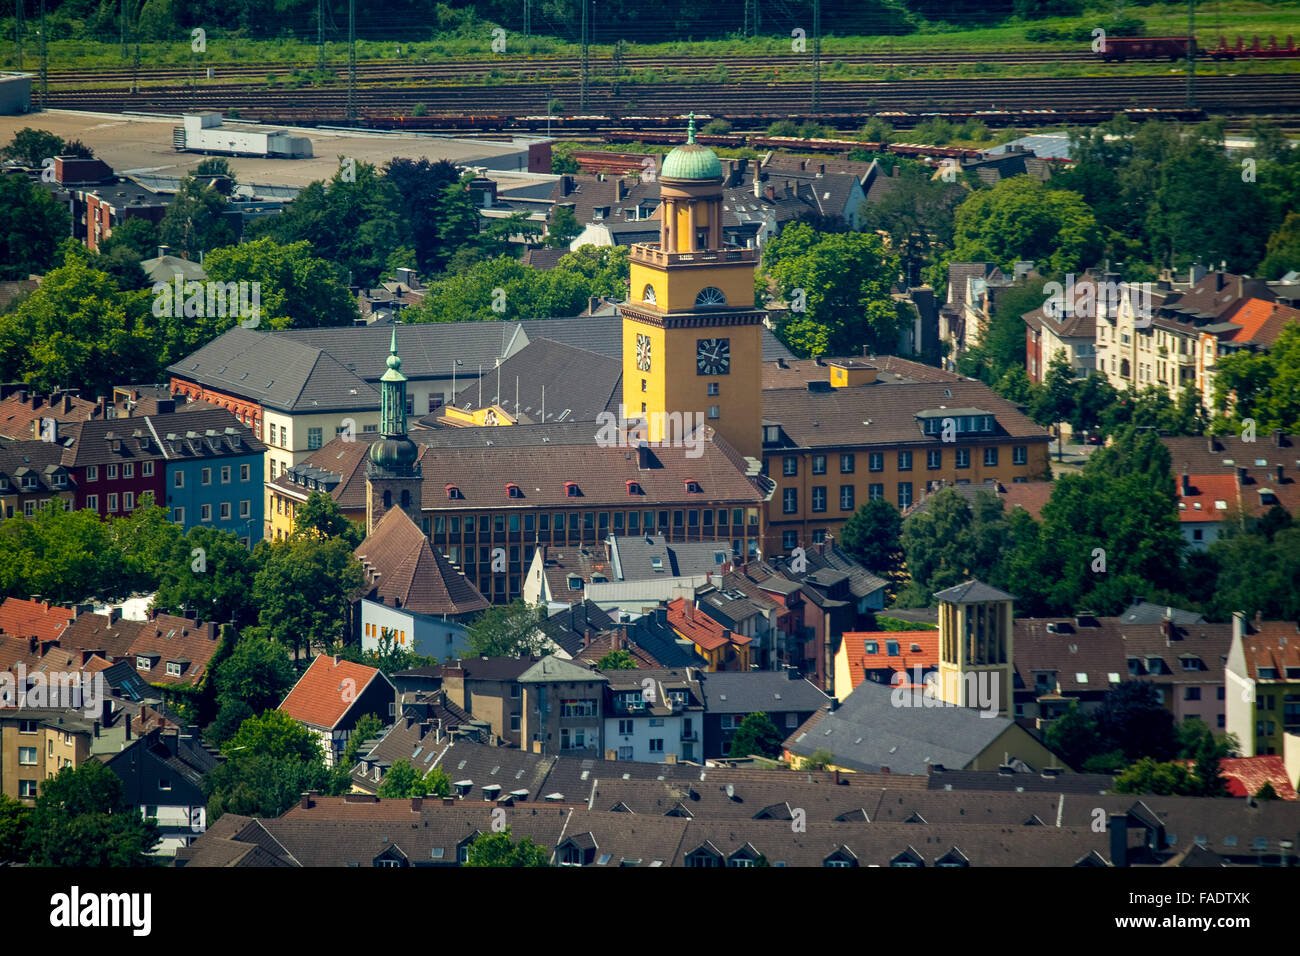 Luftaufnahme, fotografiert die Rathaus-Witten mit super-Teleobjektiv Annen, Witten, Ruhrgebiet, Stockfoto